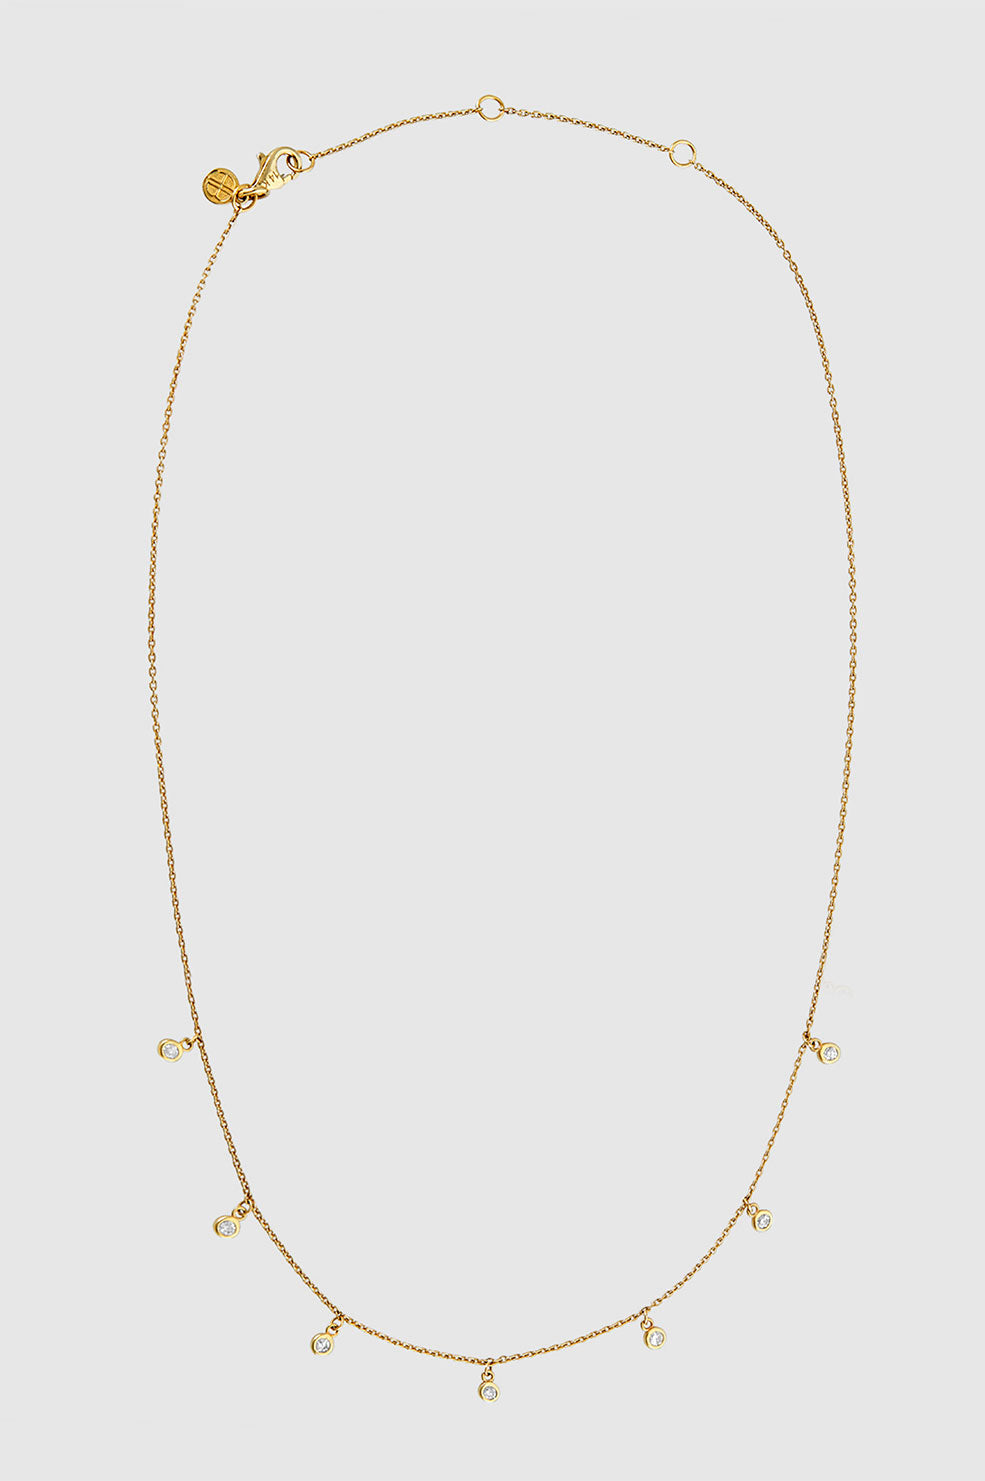 Diamond Droplet Necklace - 14k Gold